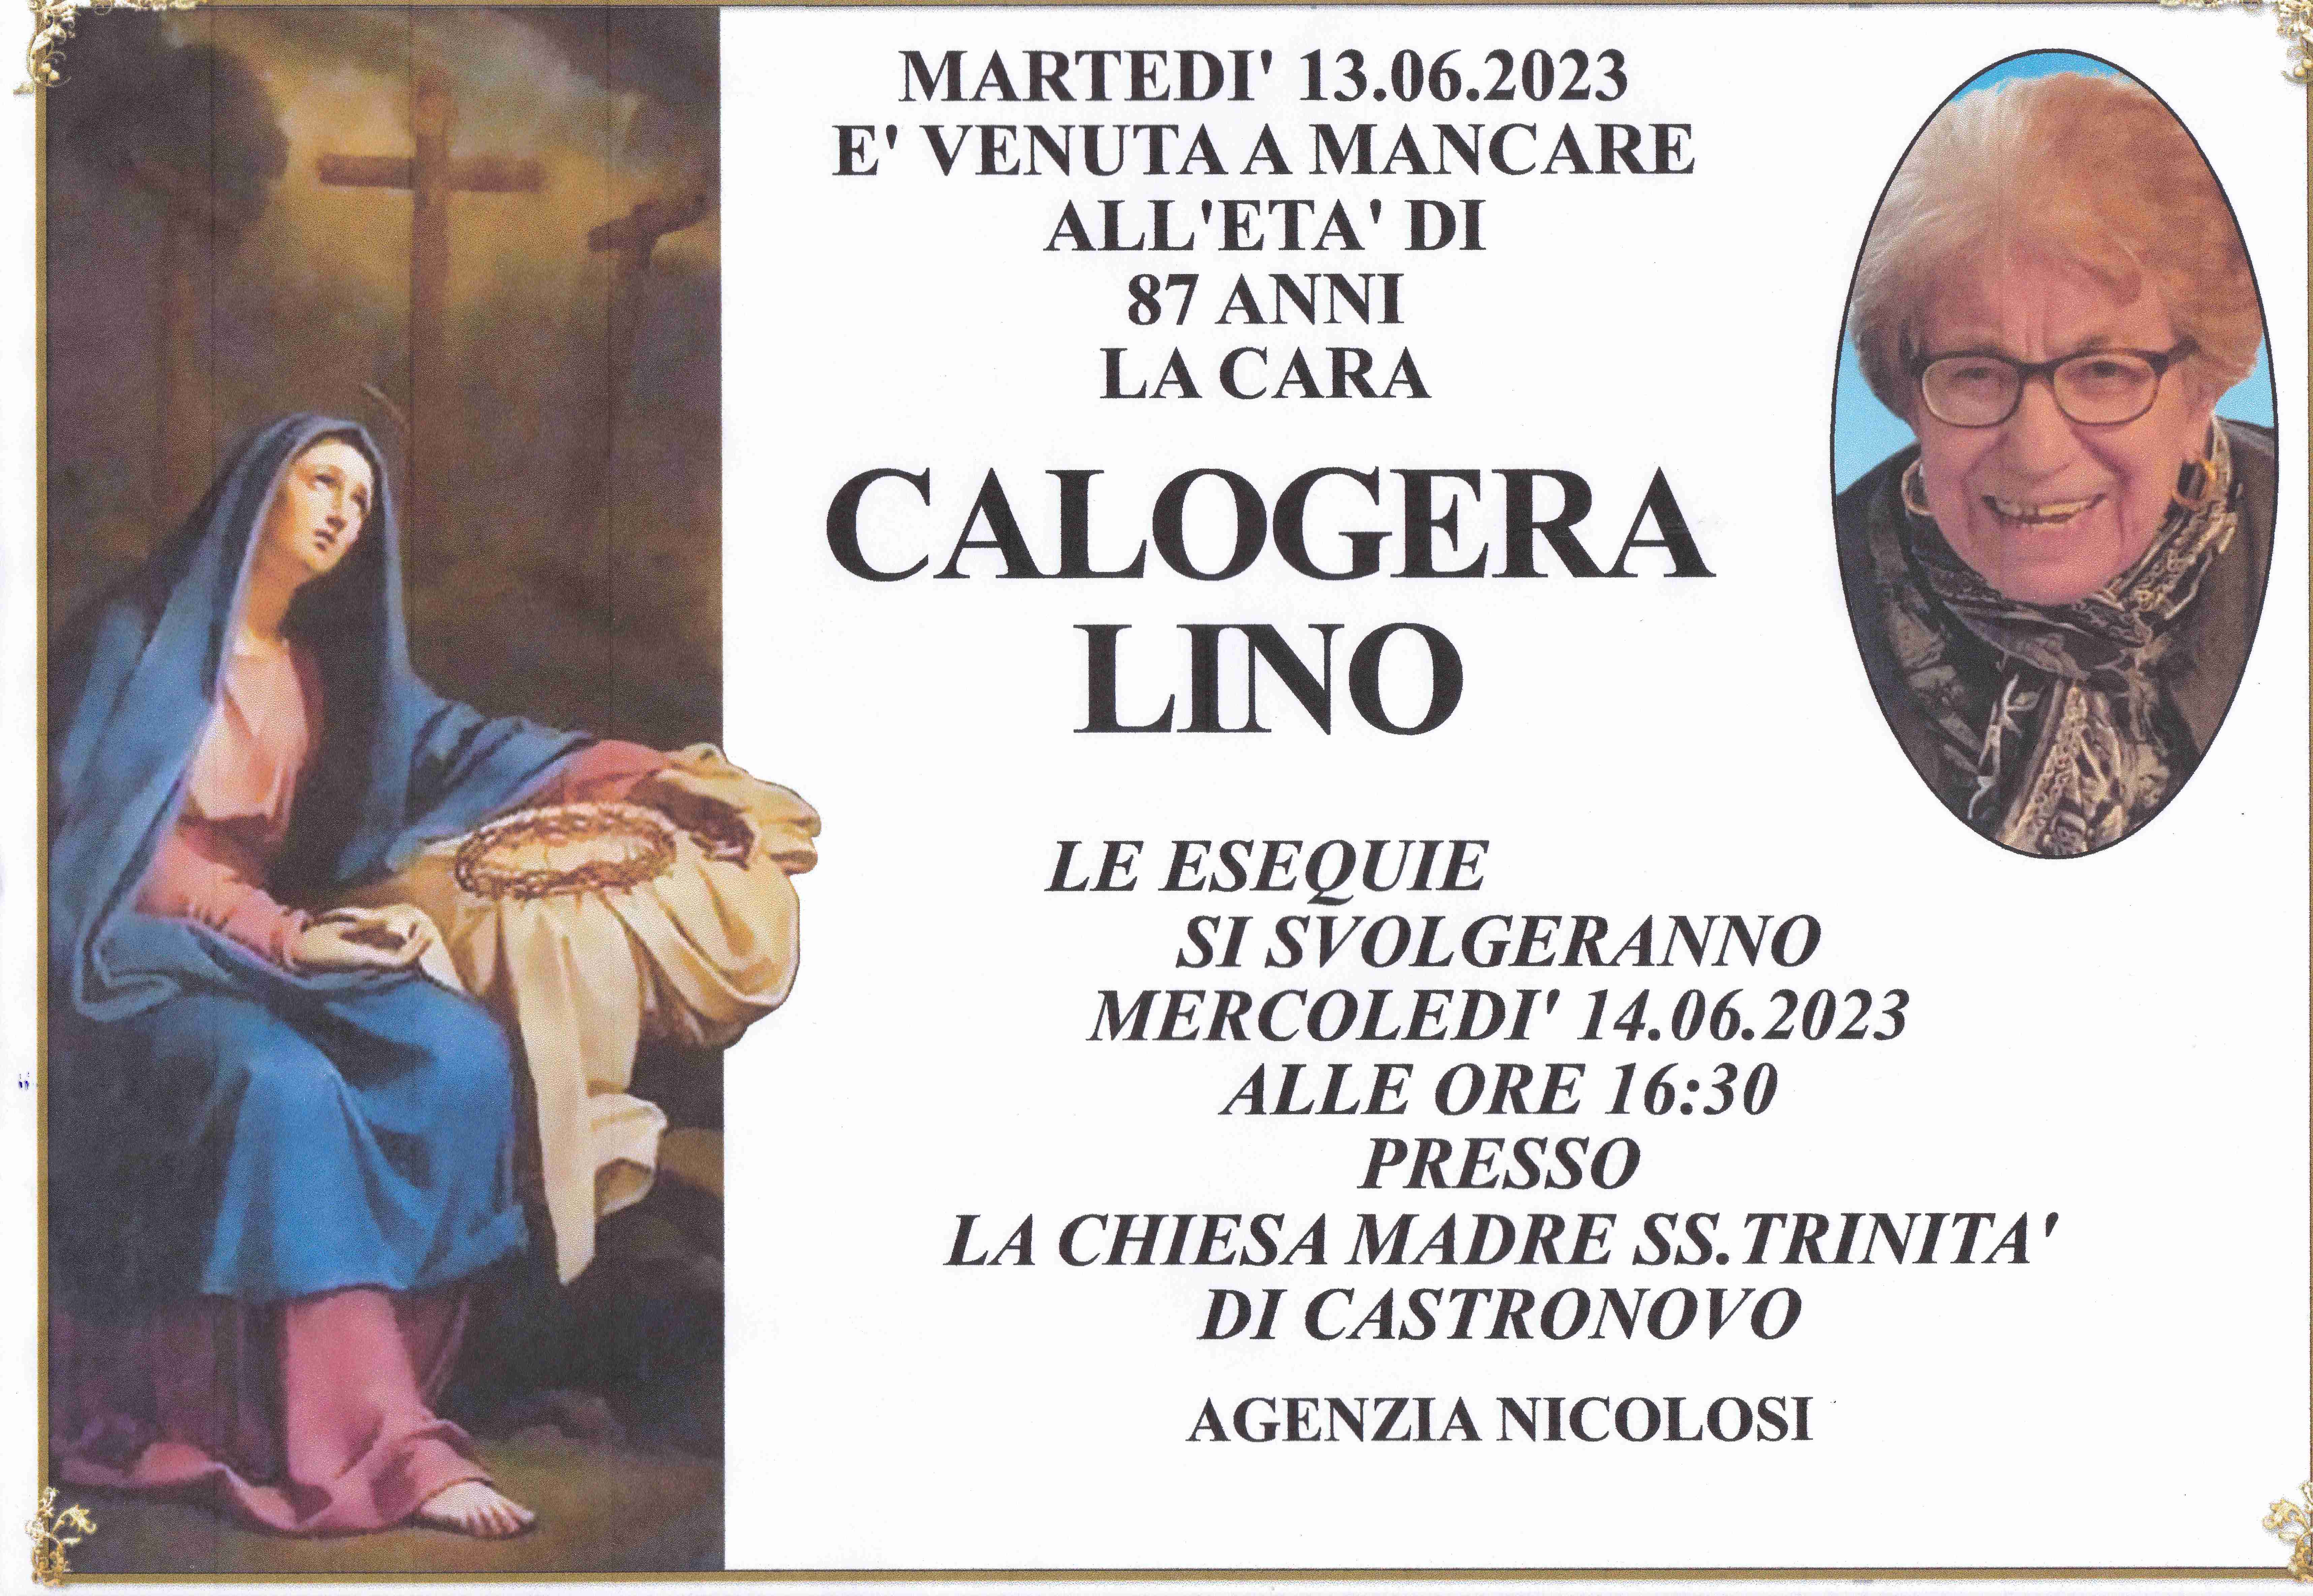 Calogera Lino